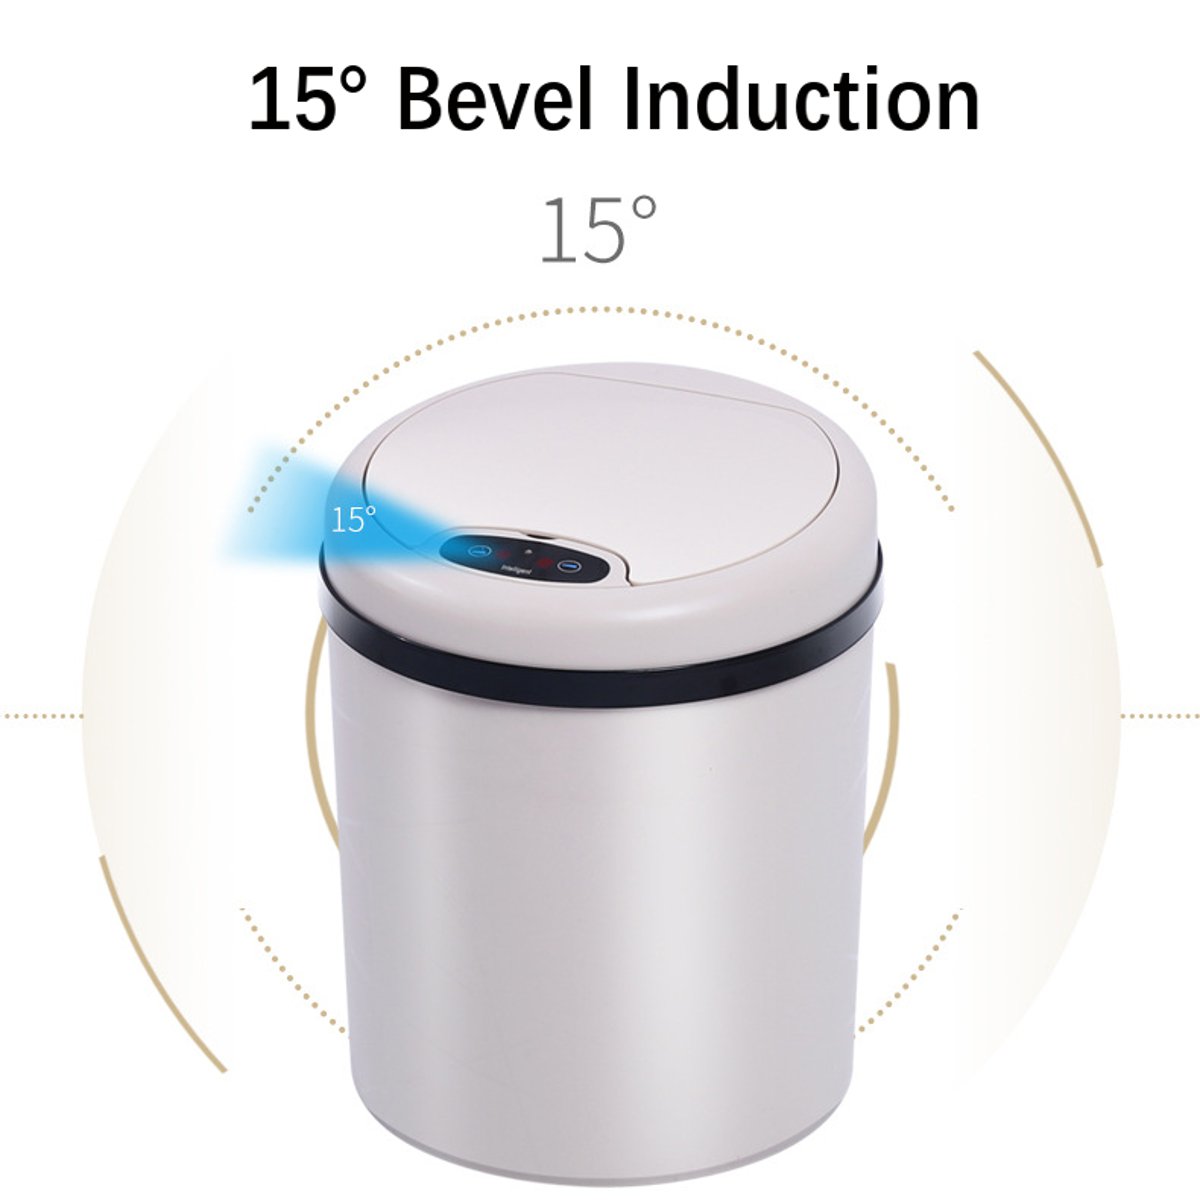 Binários do desperdício da indução do balde do lixo de Smart Sensor do caixote do lixo Sensor do infravermelho 9L / 11L automático 